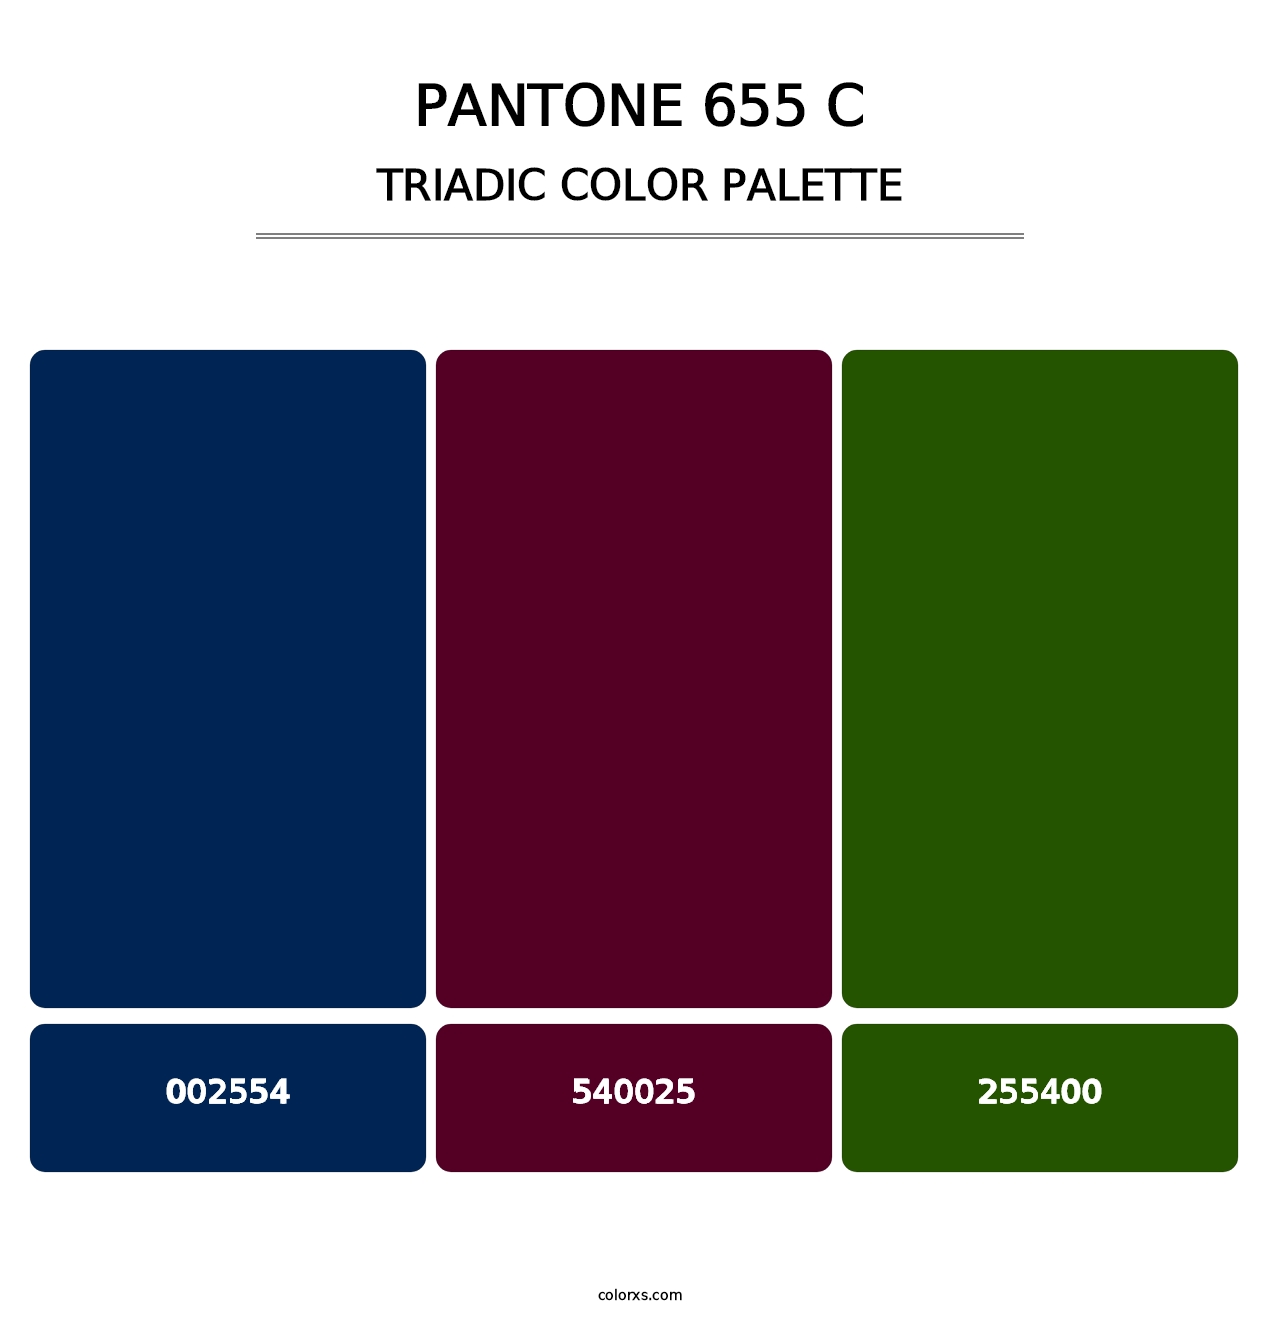 PANTONE 655 C - Triadic Color Palette